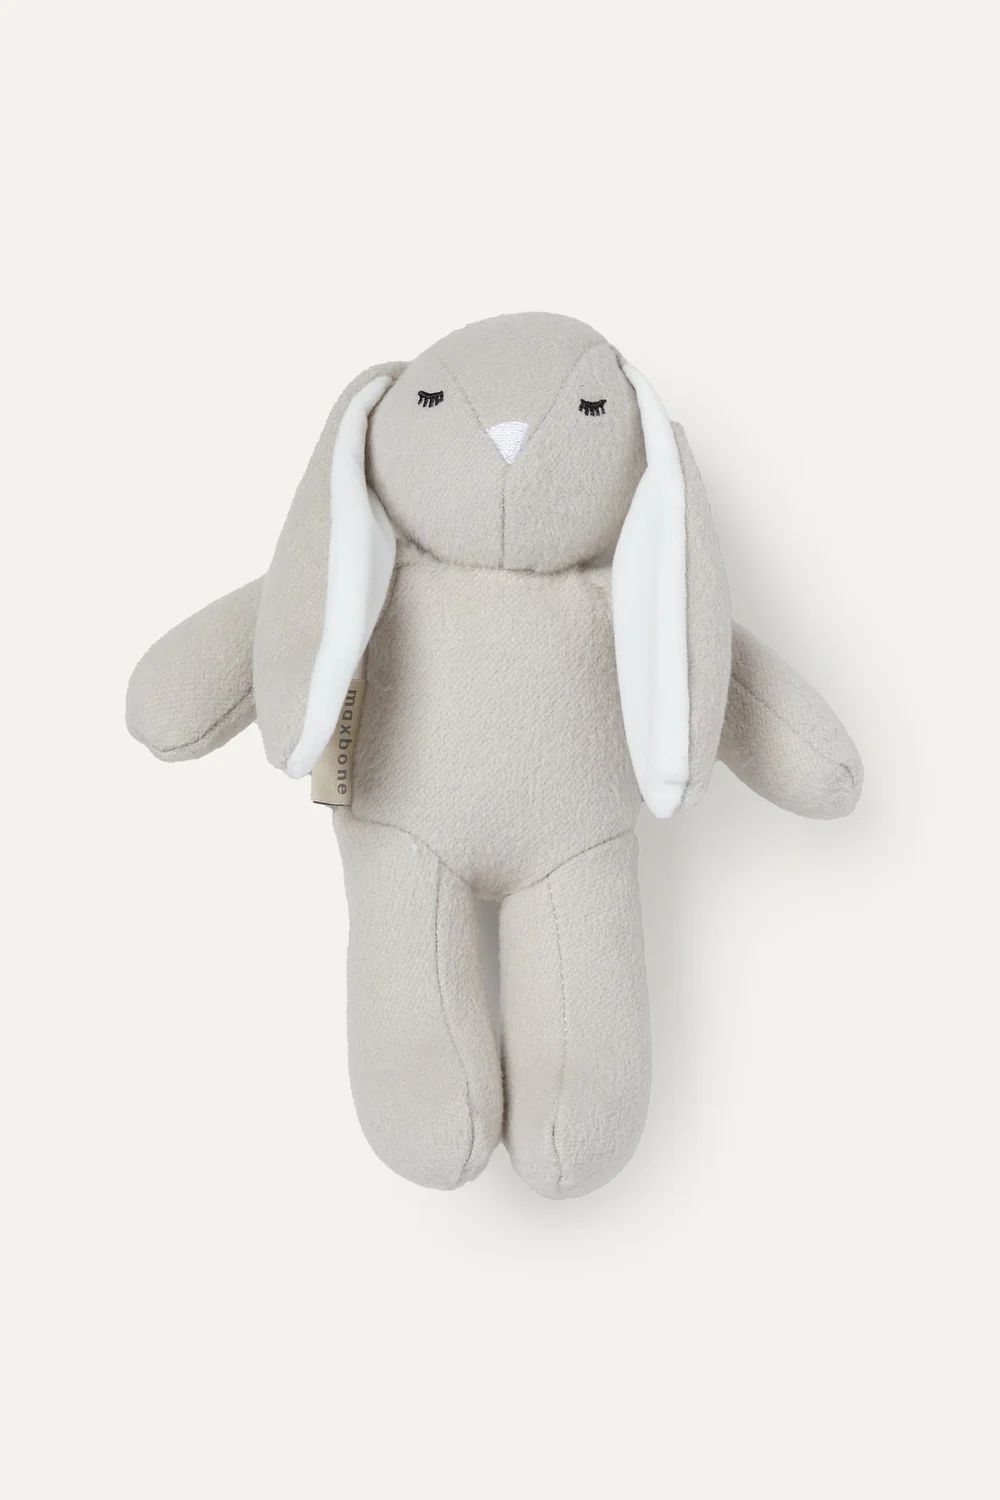 Bonnie Bunny Plush Toy | max-bone